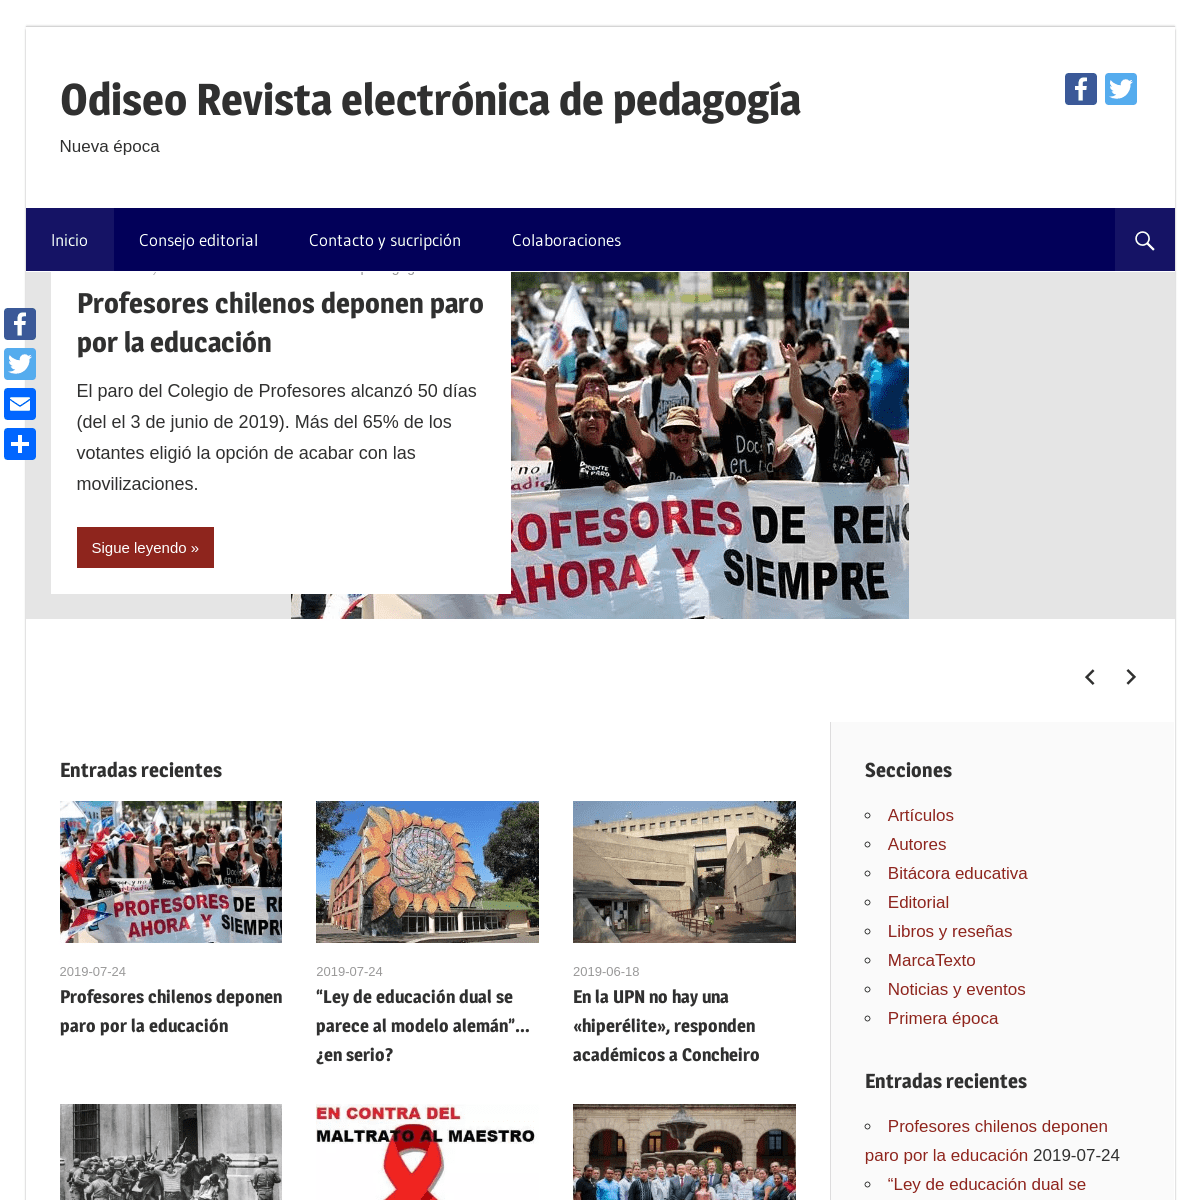 Odiseo Revista electrónica de pedagogía – Nueva época